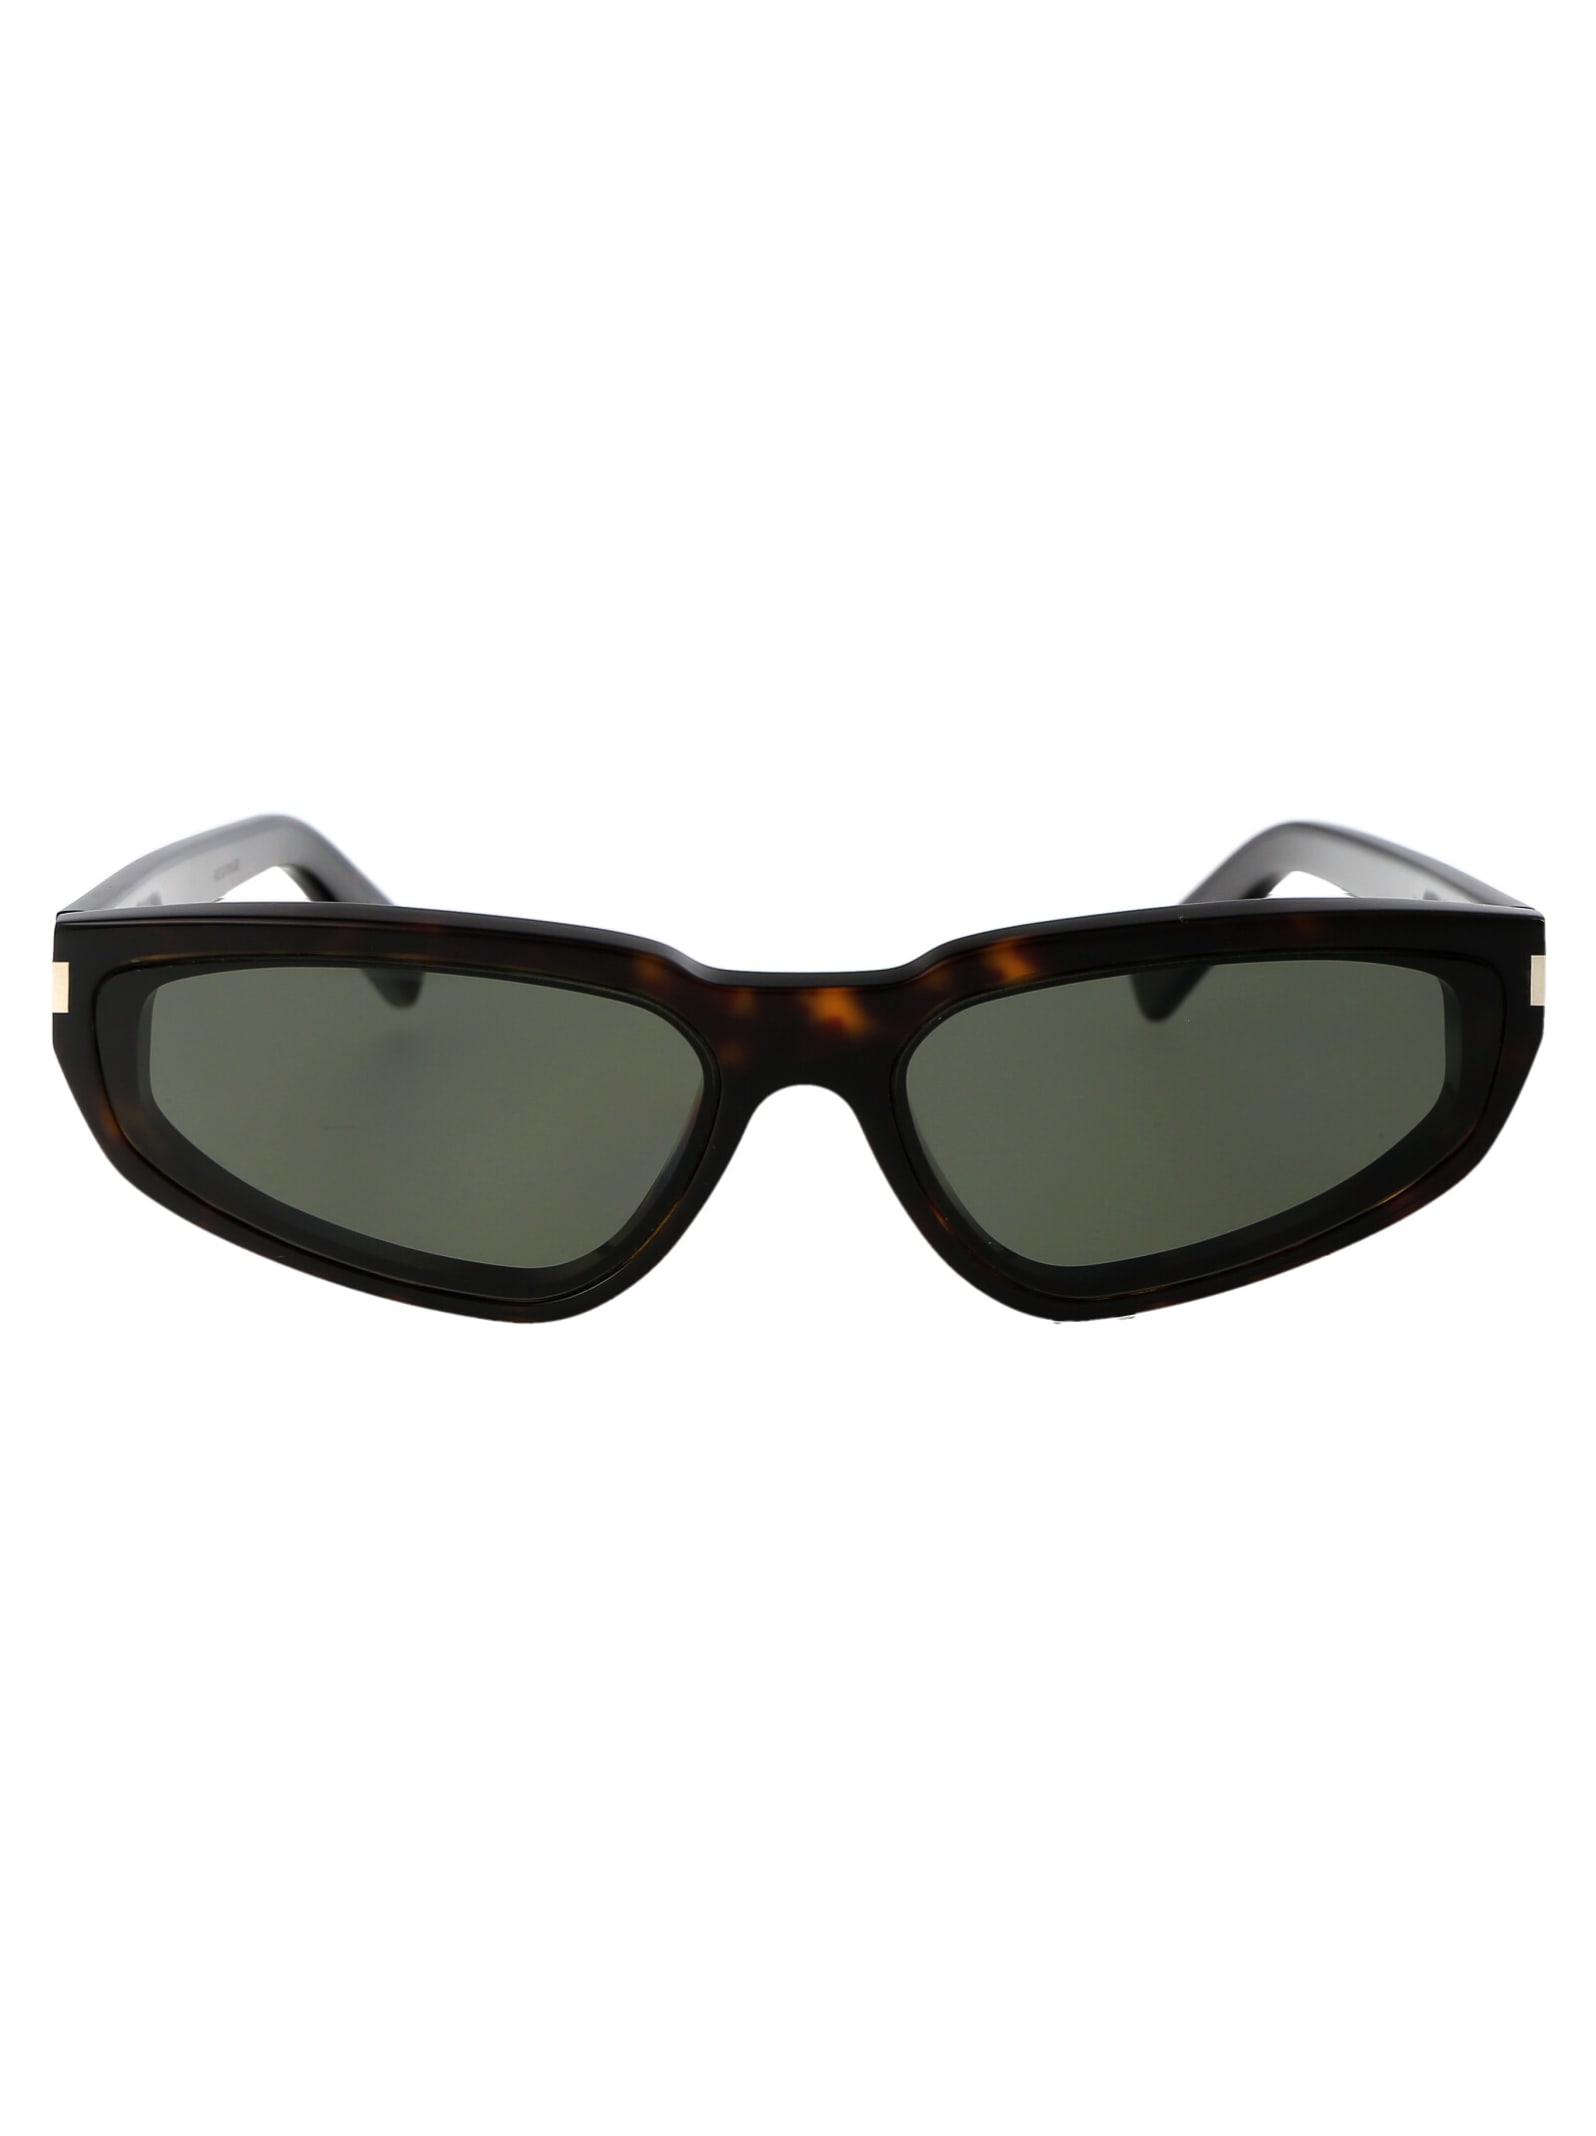 Saint Laurent Sl 634 Nova Sunglasses In 002 Havana Havana Grey